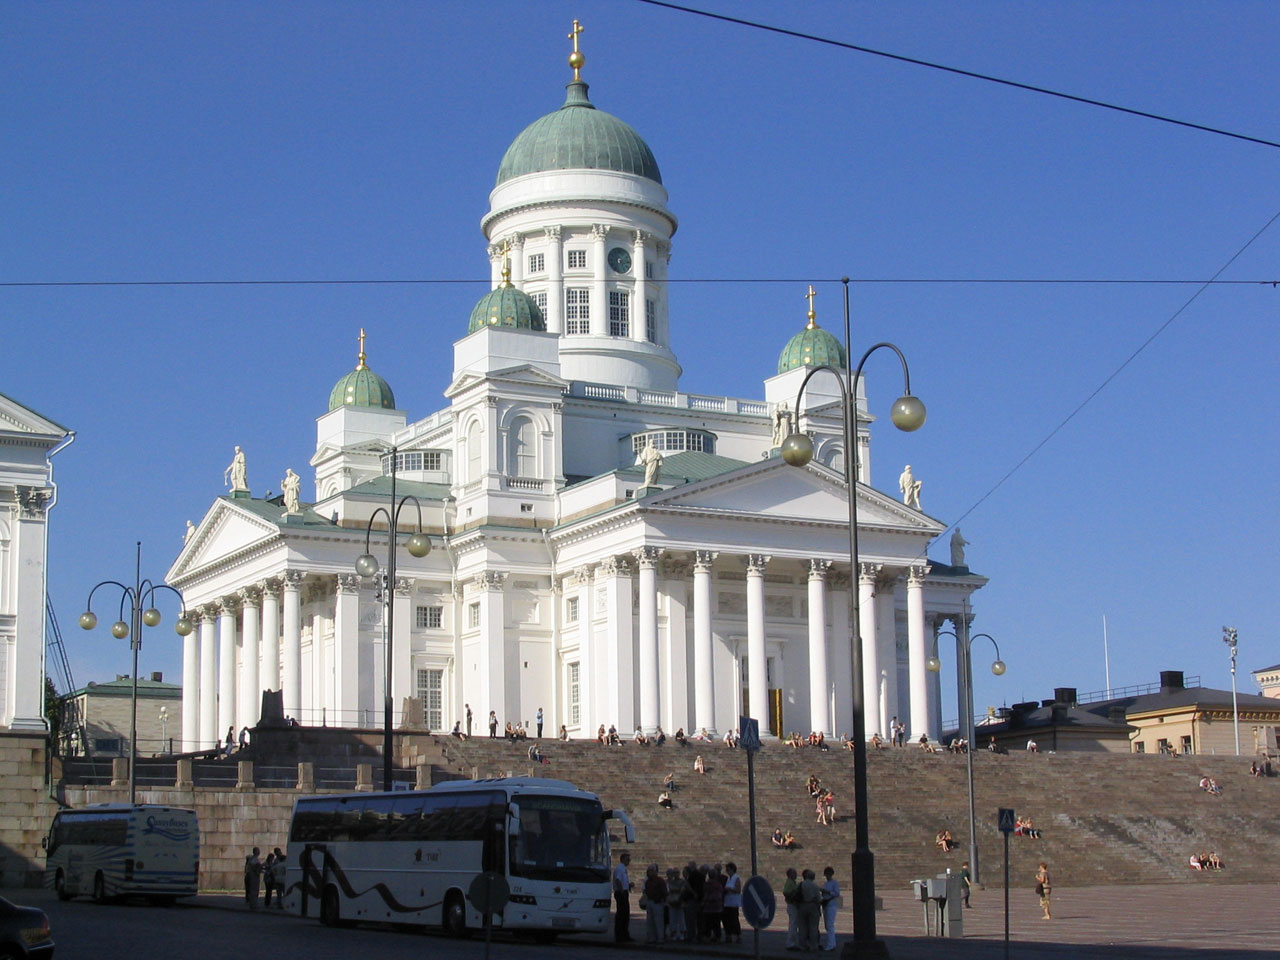 Helsinki,  Finland,  Suomių,  Katedra,  Bažnyčia,  Liuteronai,  Religija,  Capitol,  Architektūra,  Helsinki